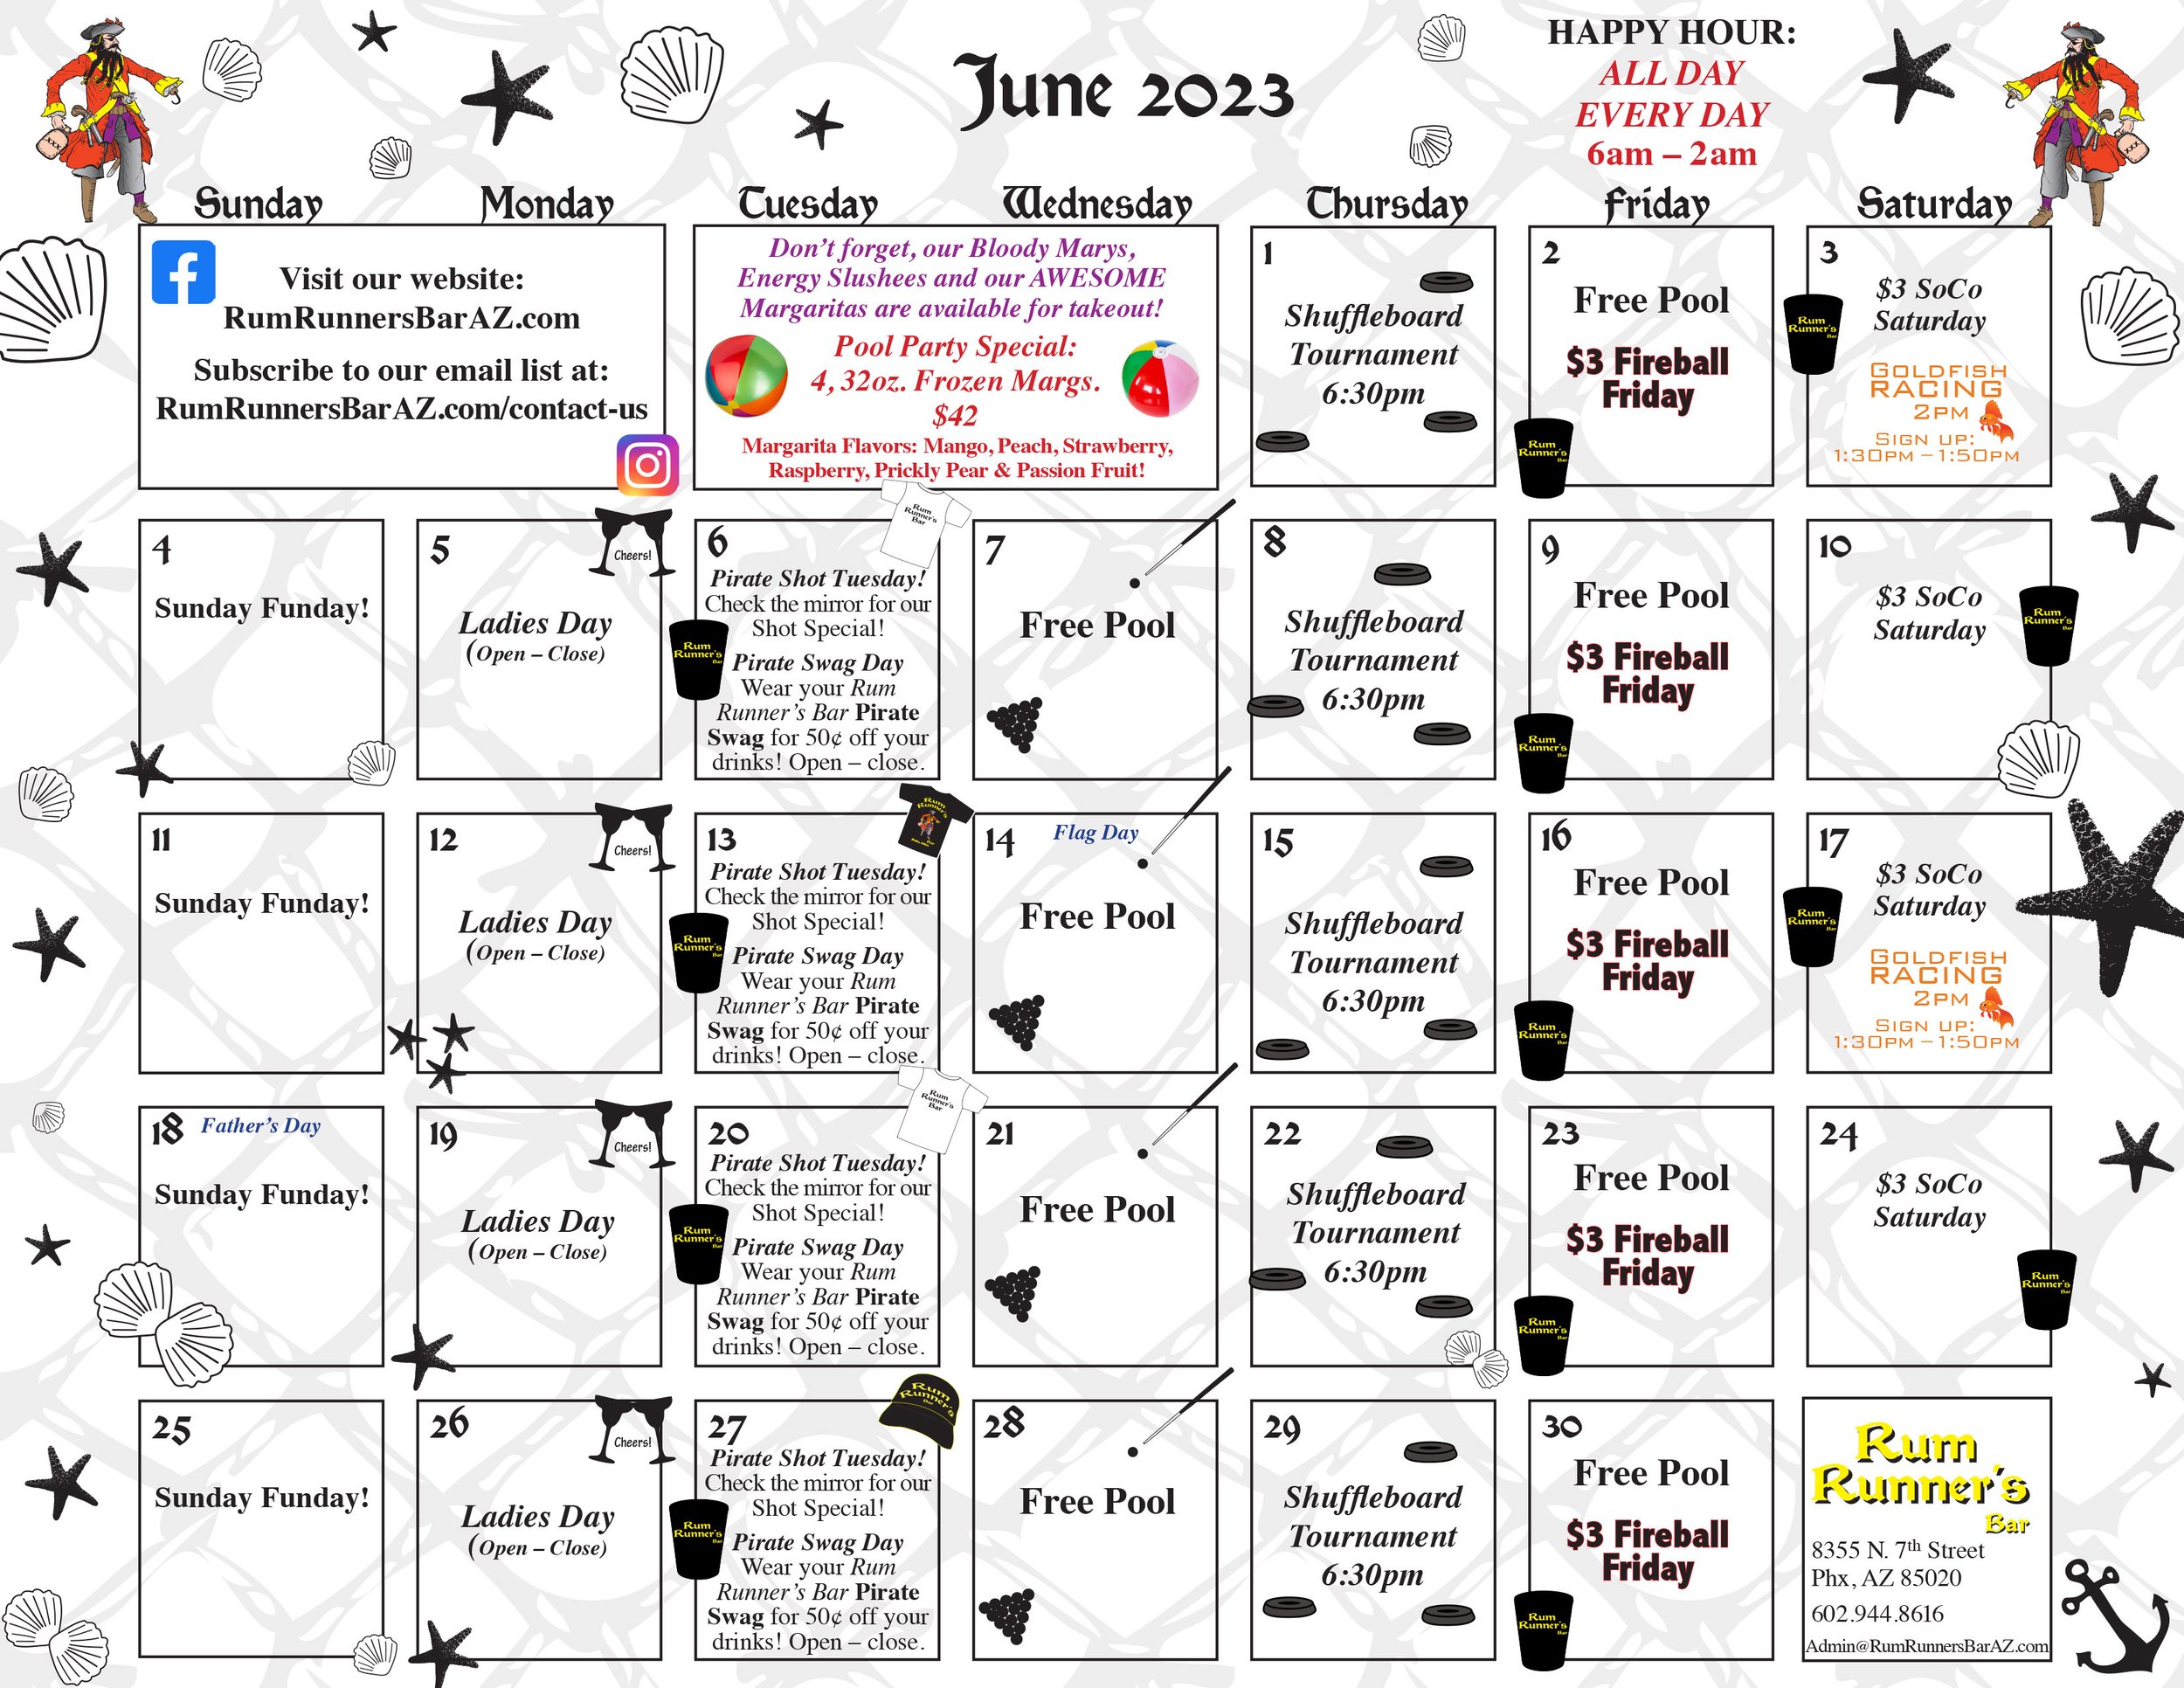 RRBar_Calendar_06_June_2023b-web.jpg